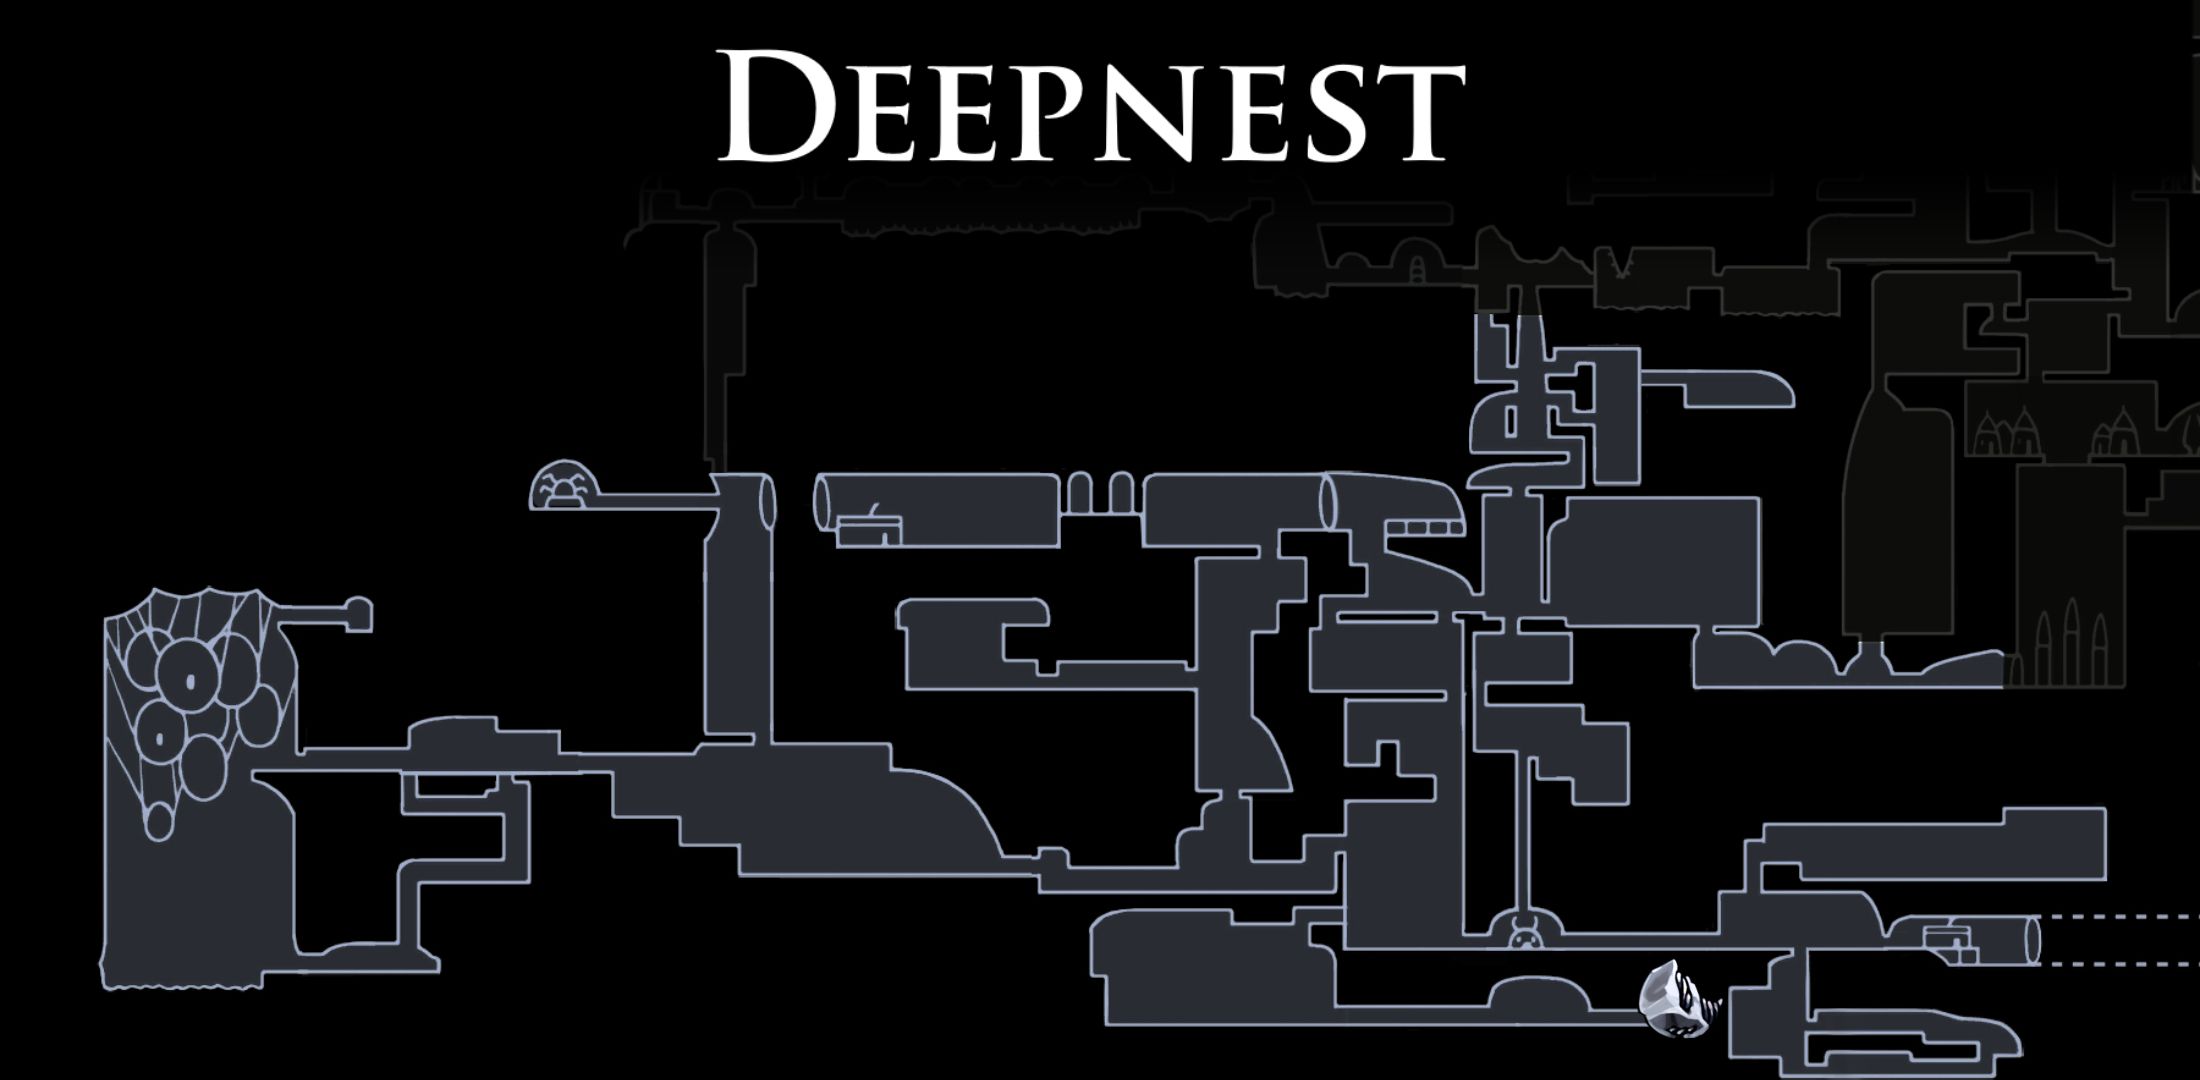 hollow knight map deepnest